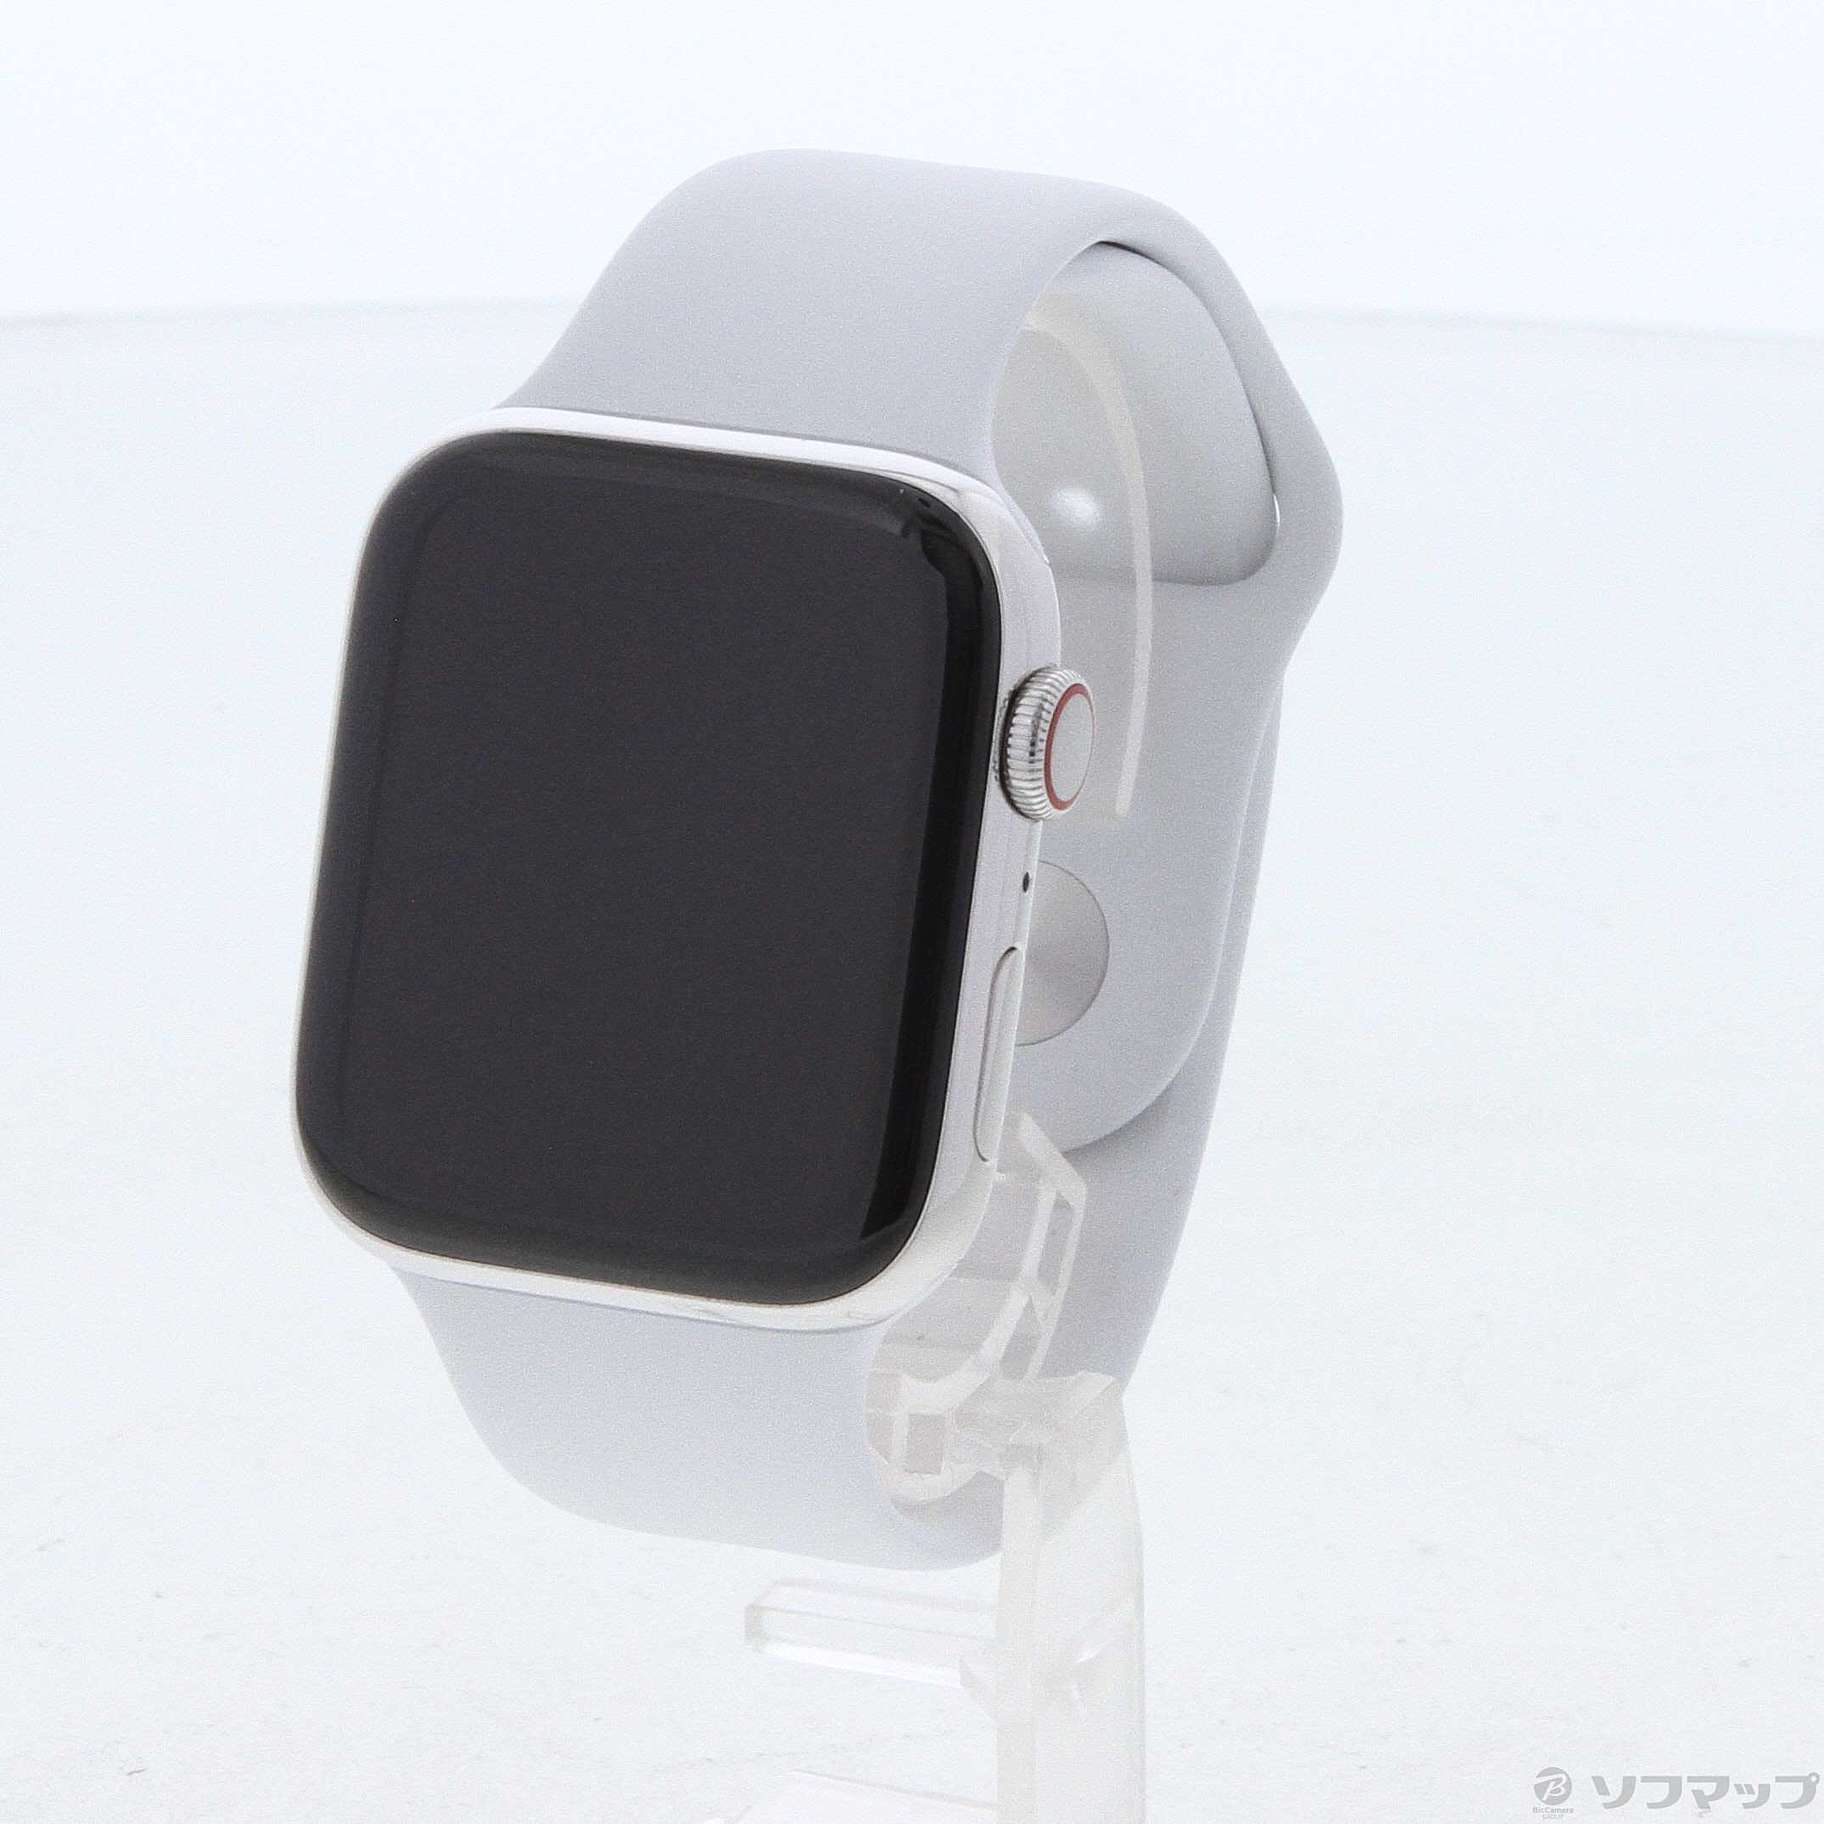 Apple Watch Series 4 ステンレススチールケースアダプターは付きません